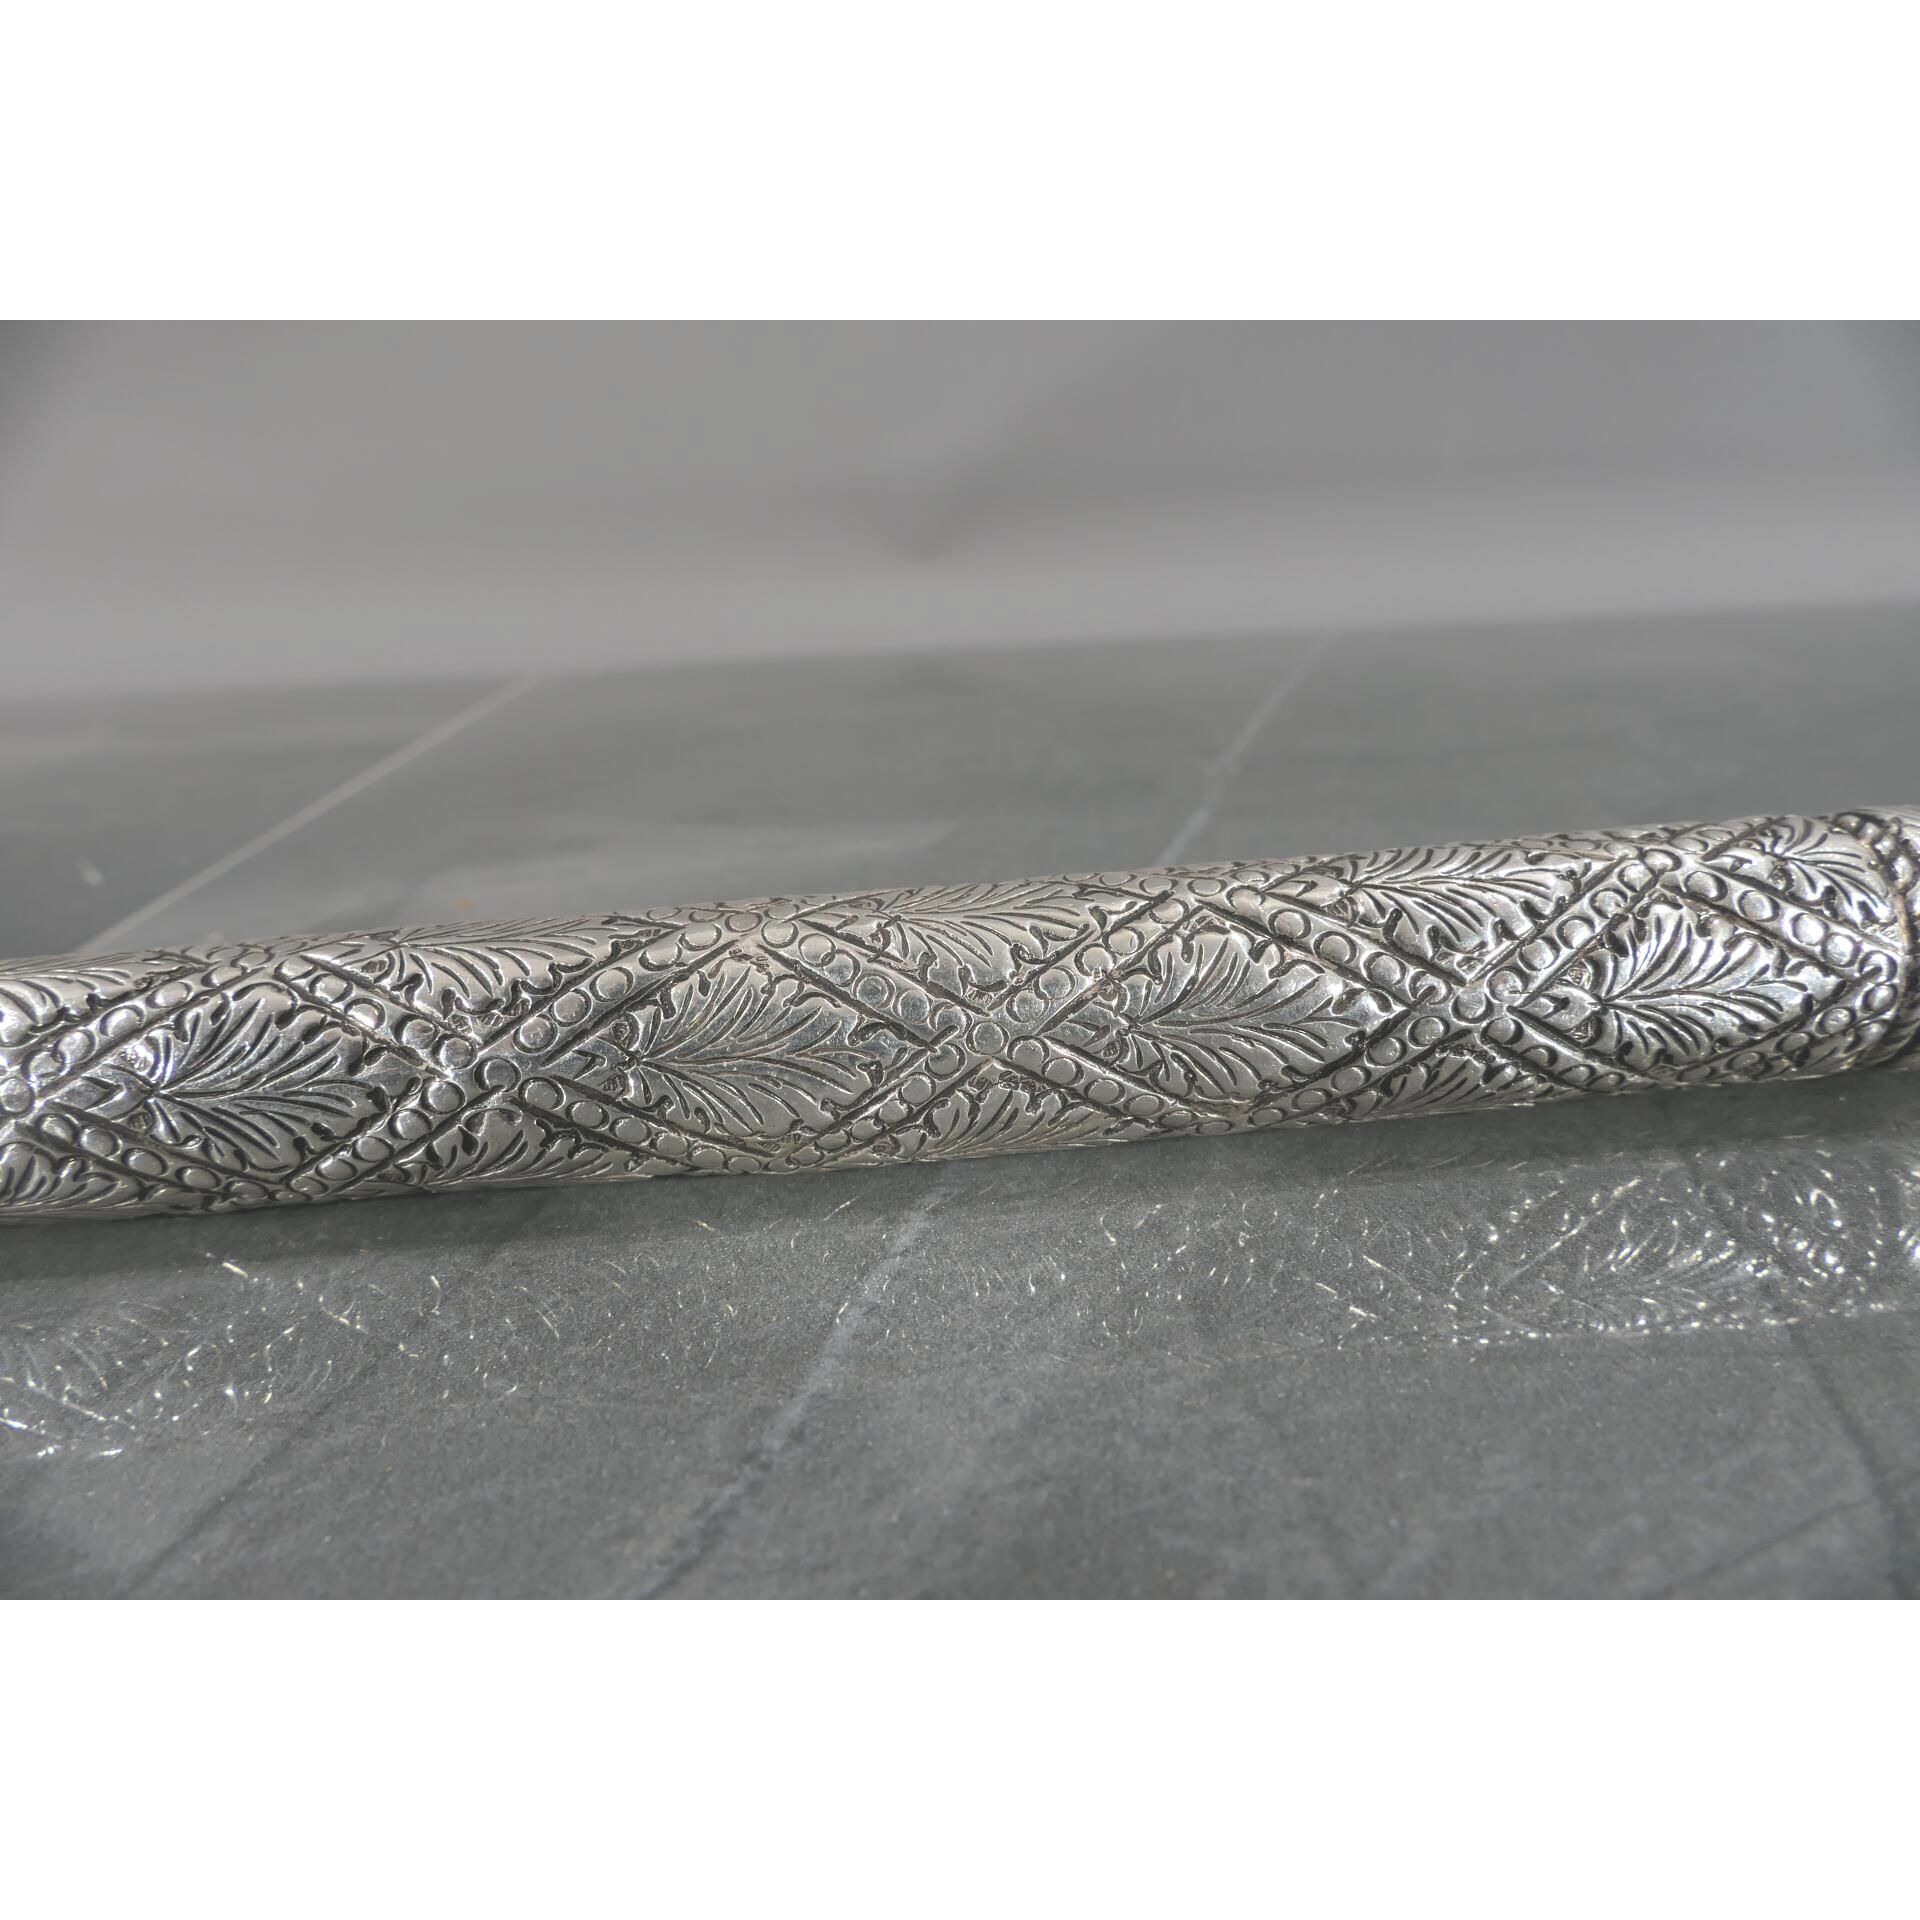 Gehstock mit Entengriffstück, 800er Silber tlw. von Hand gravierter, hohlgegossener, verschraubter, - Bild 9 aus 18